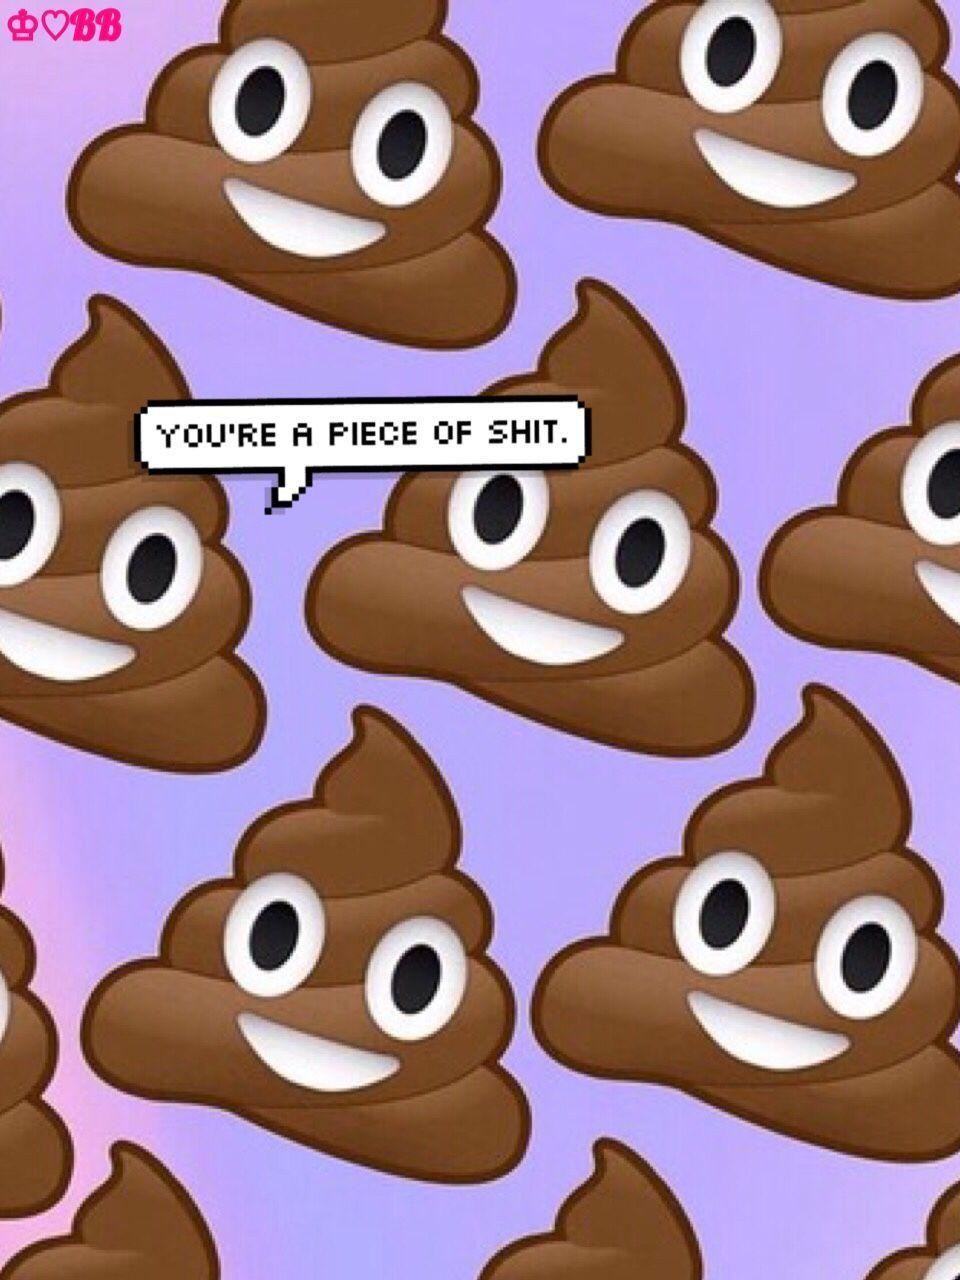  Poop  Emoji  Wallpapers  Top Free Poop  Emoji  Backgrounds  